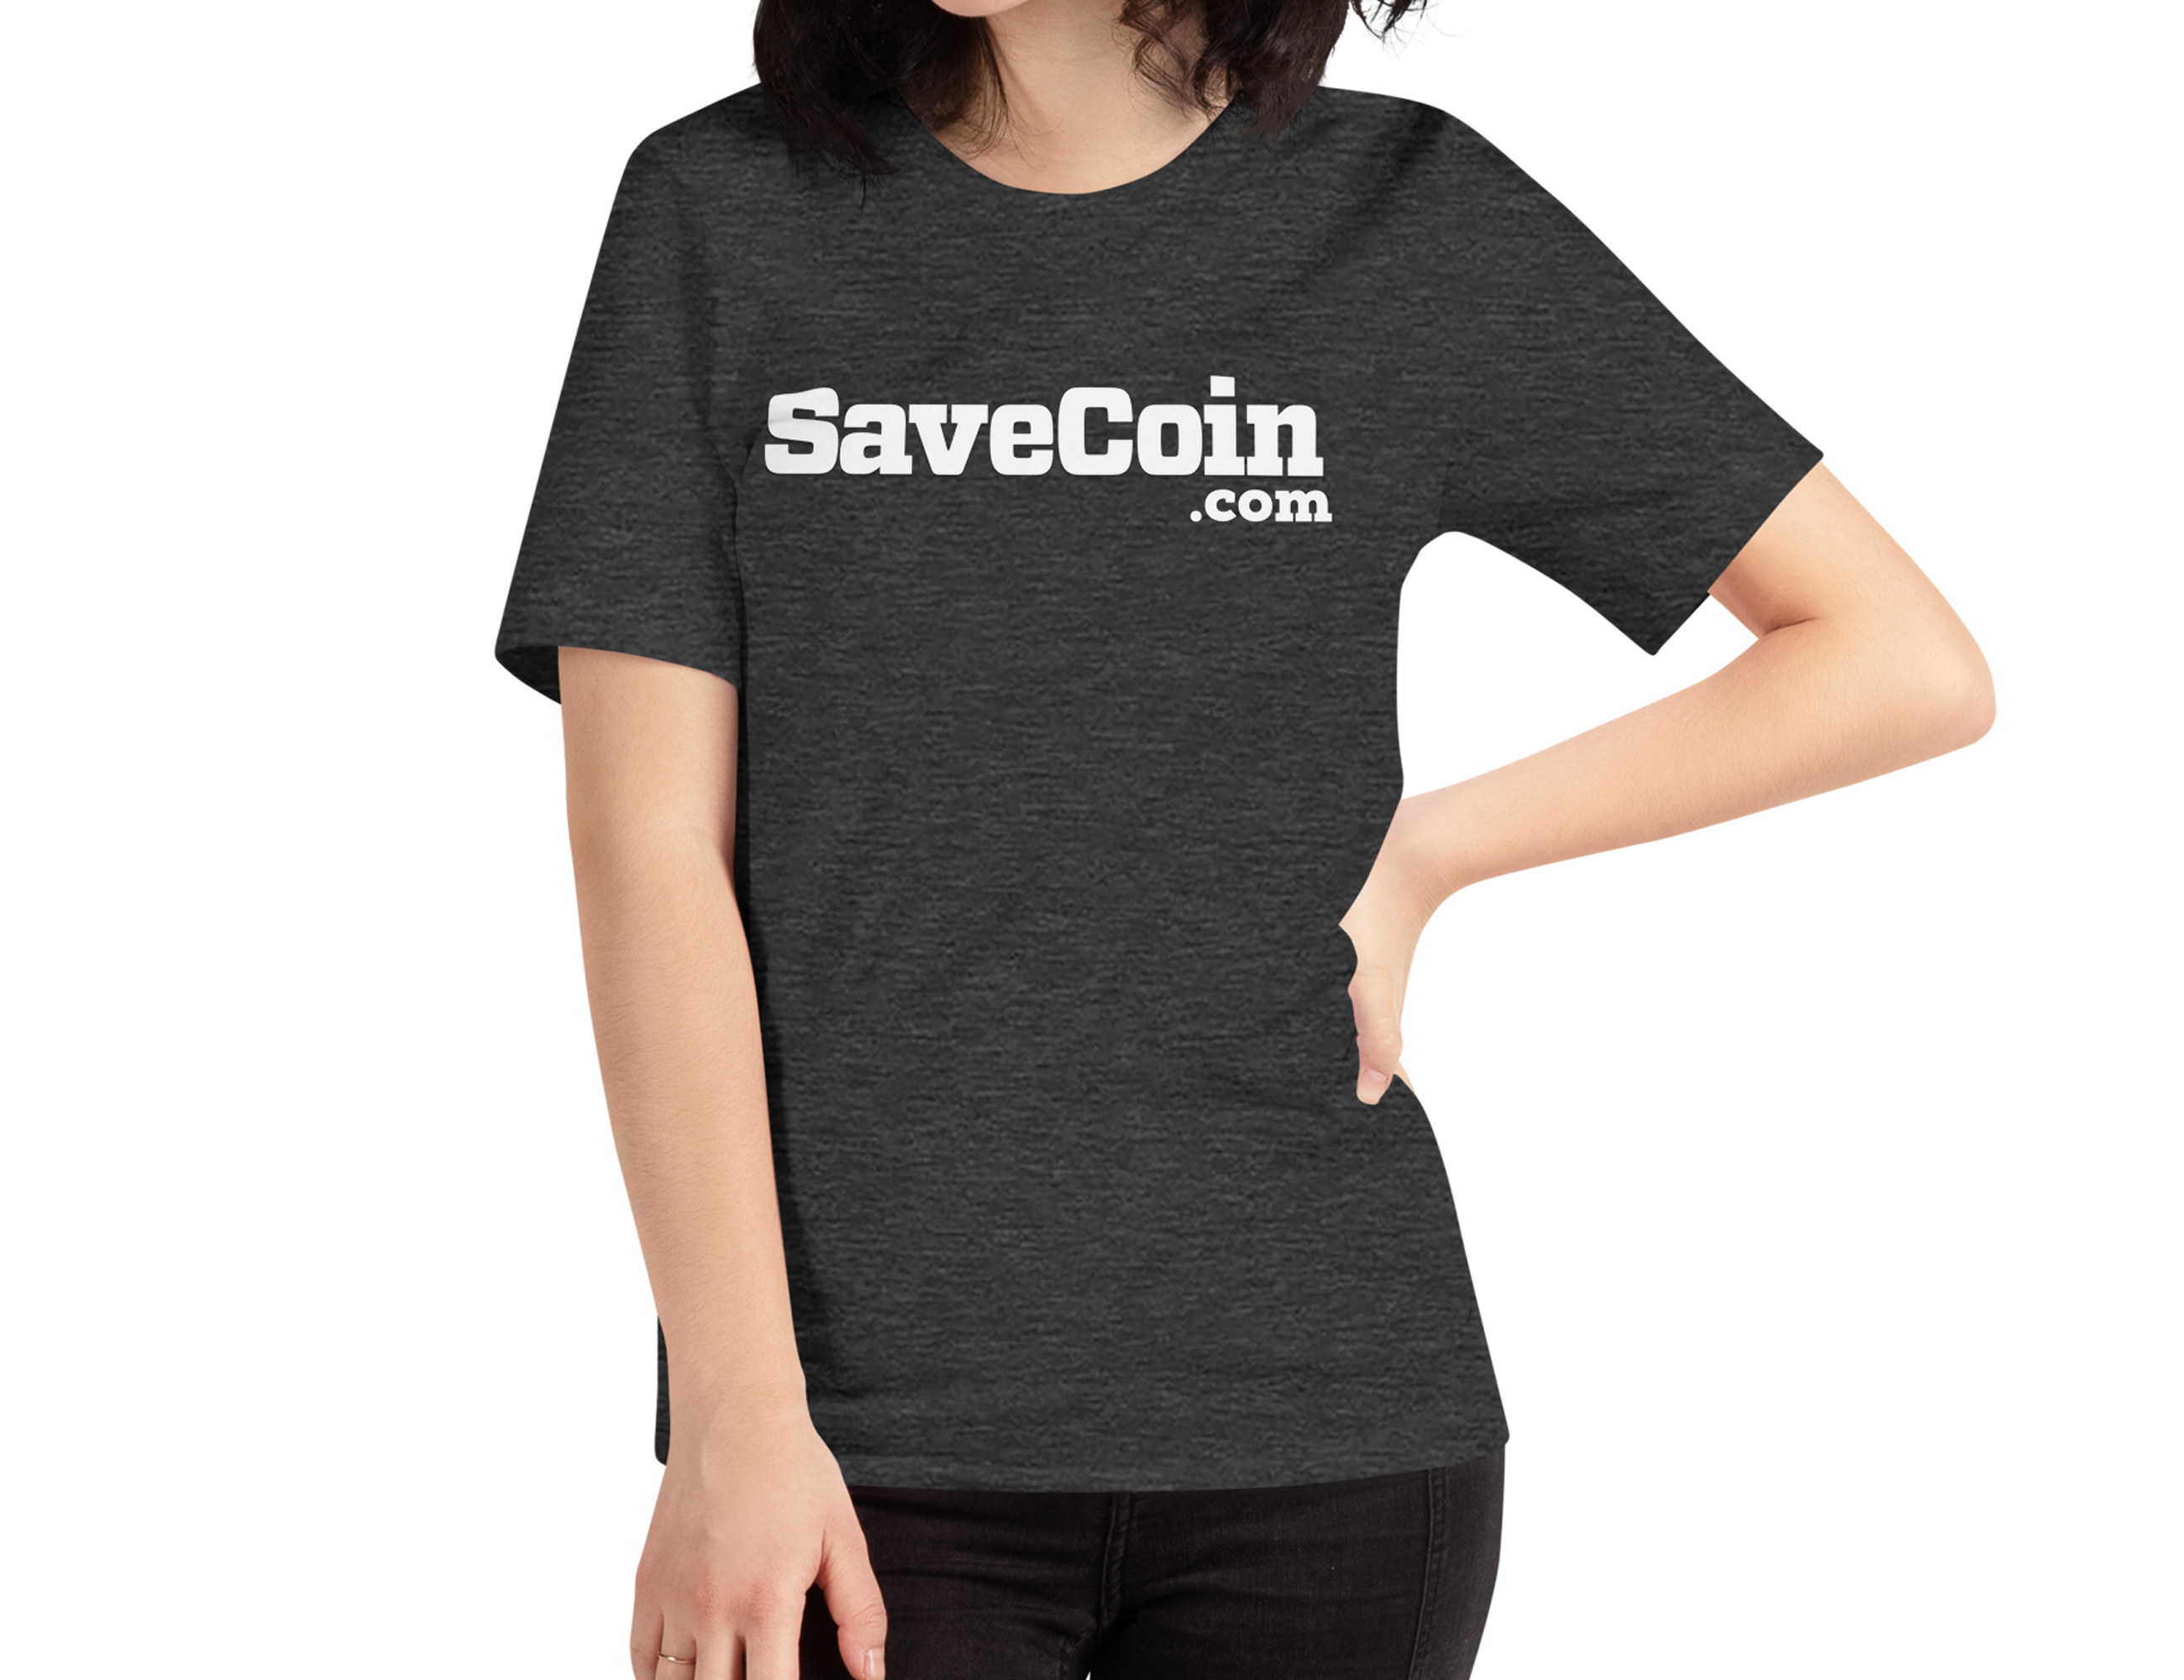 SaveCoin